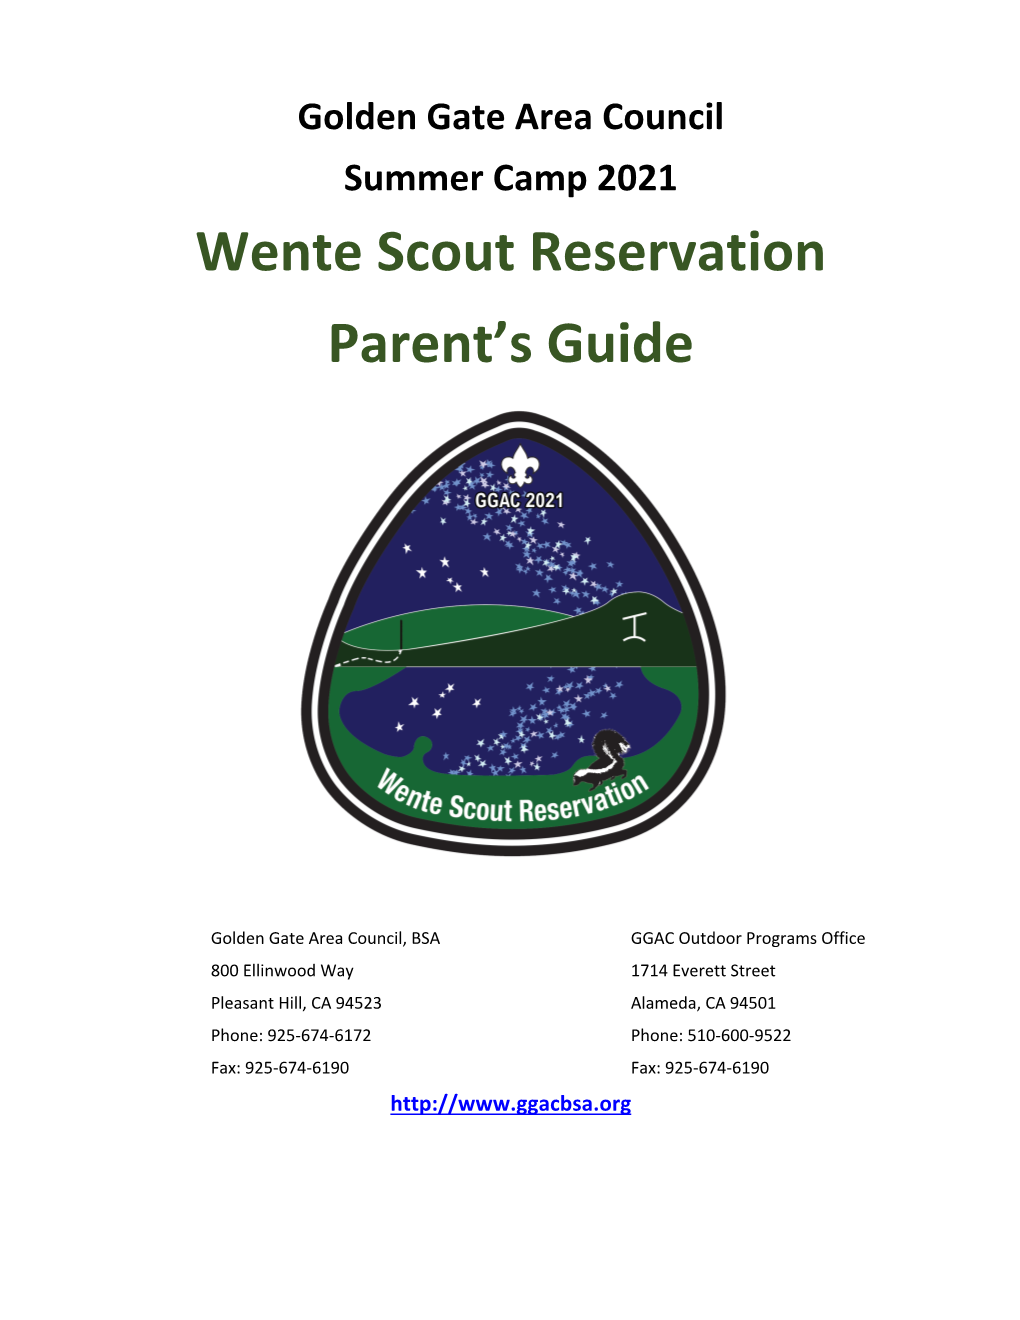 Wente Parent Guide 2021 V1.0